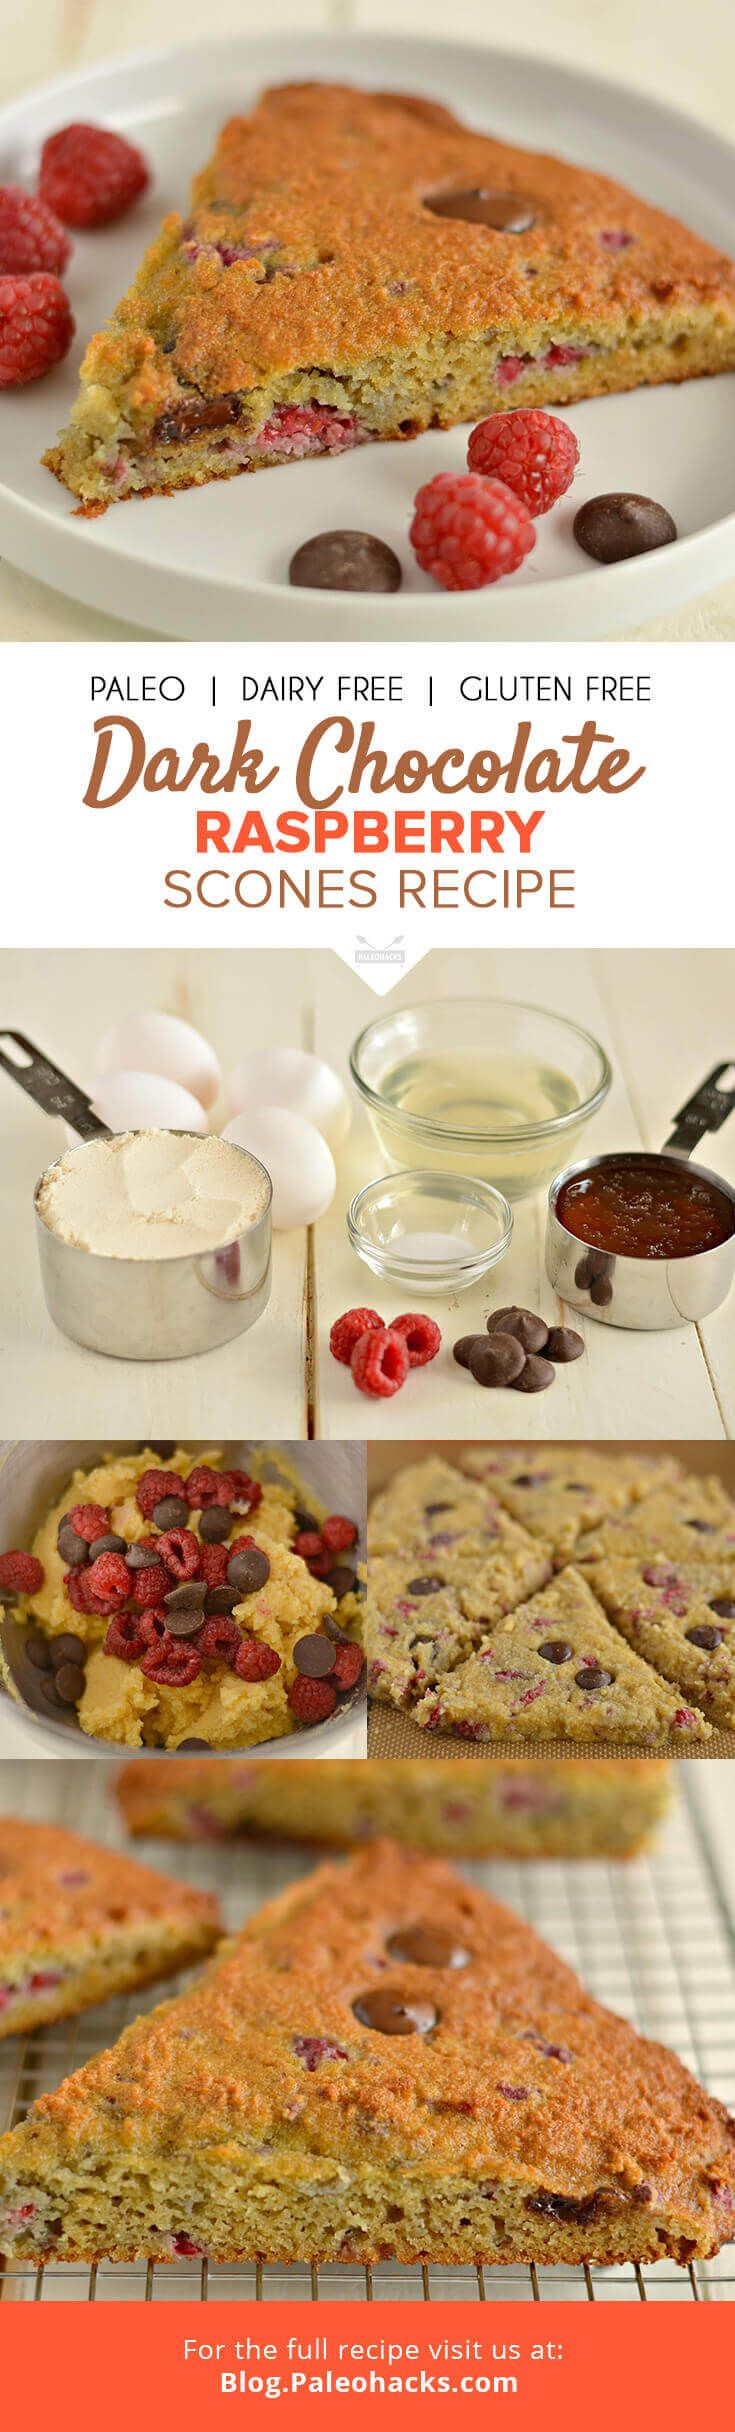 Paleo Scones with Raspberries Recipe